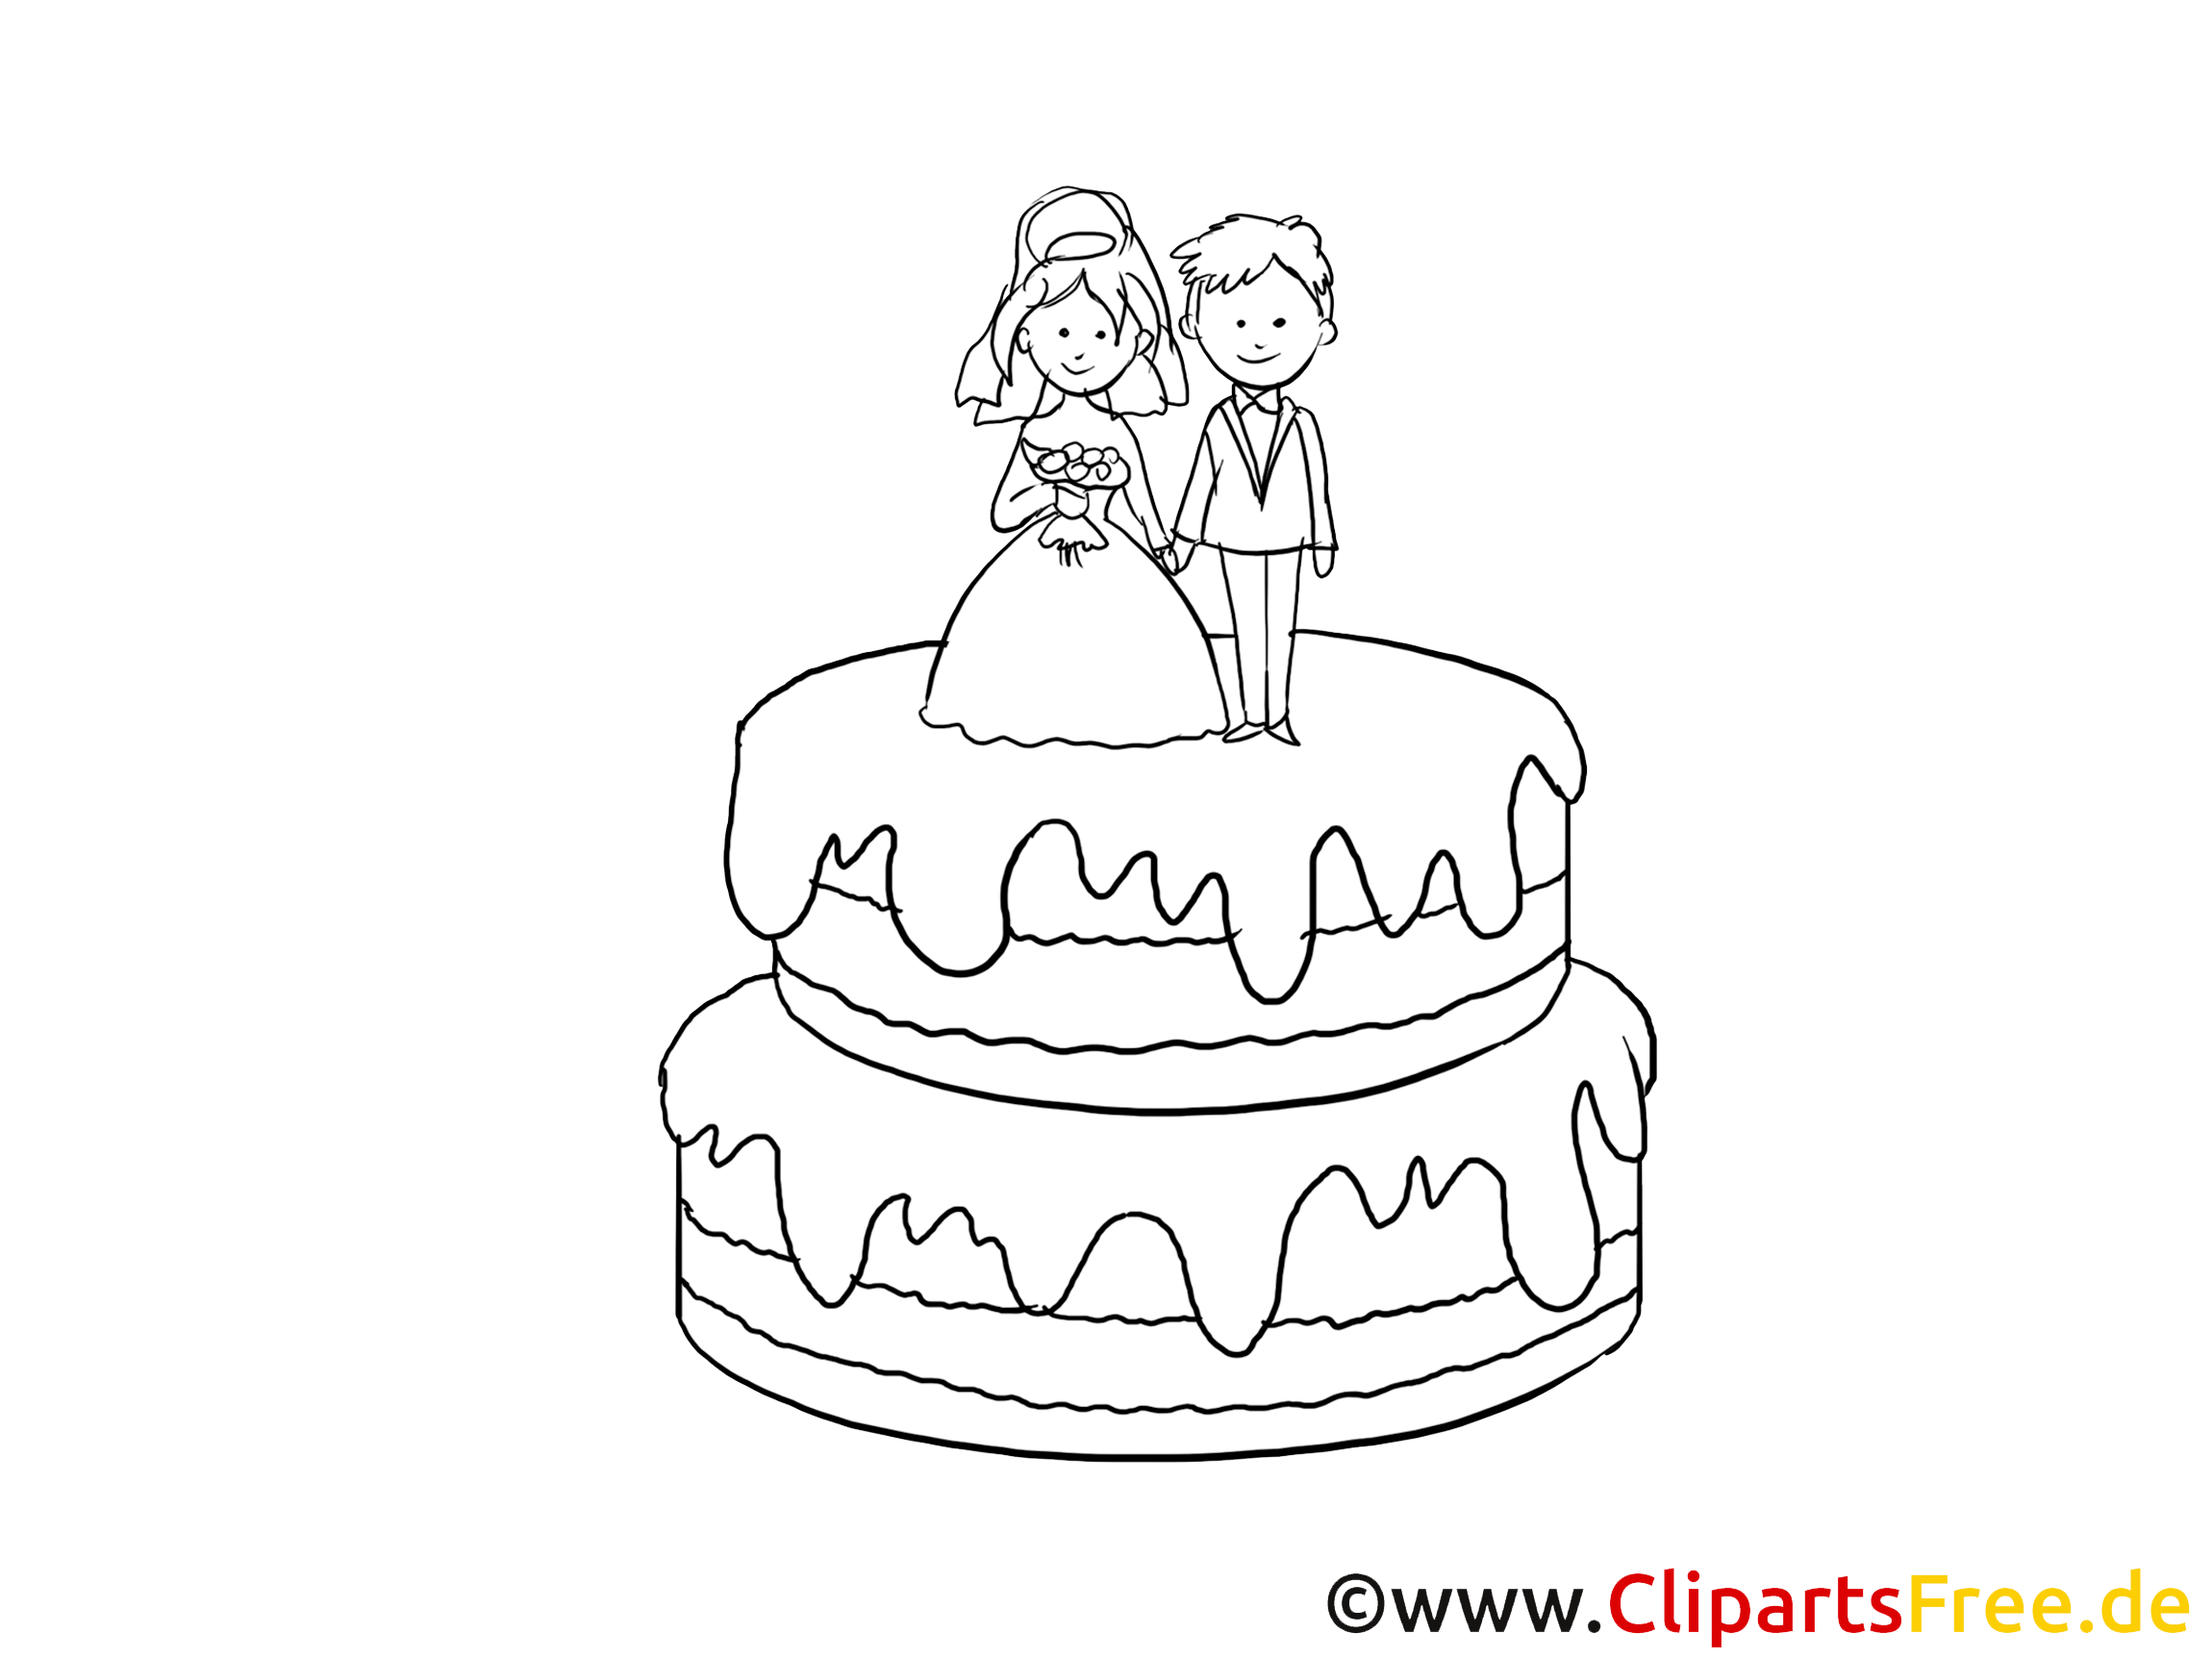 clipart kostenlos torte - photo #4